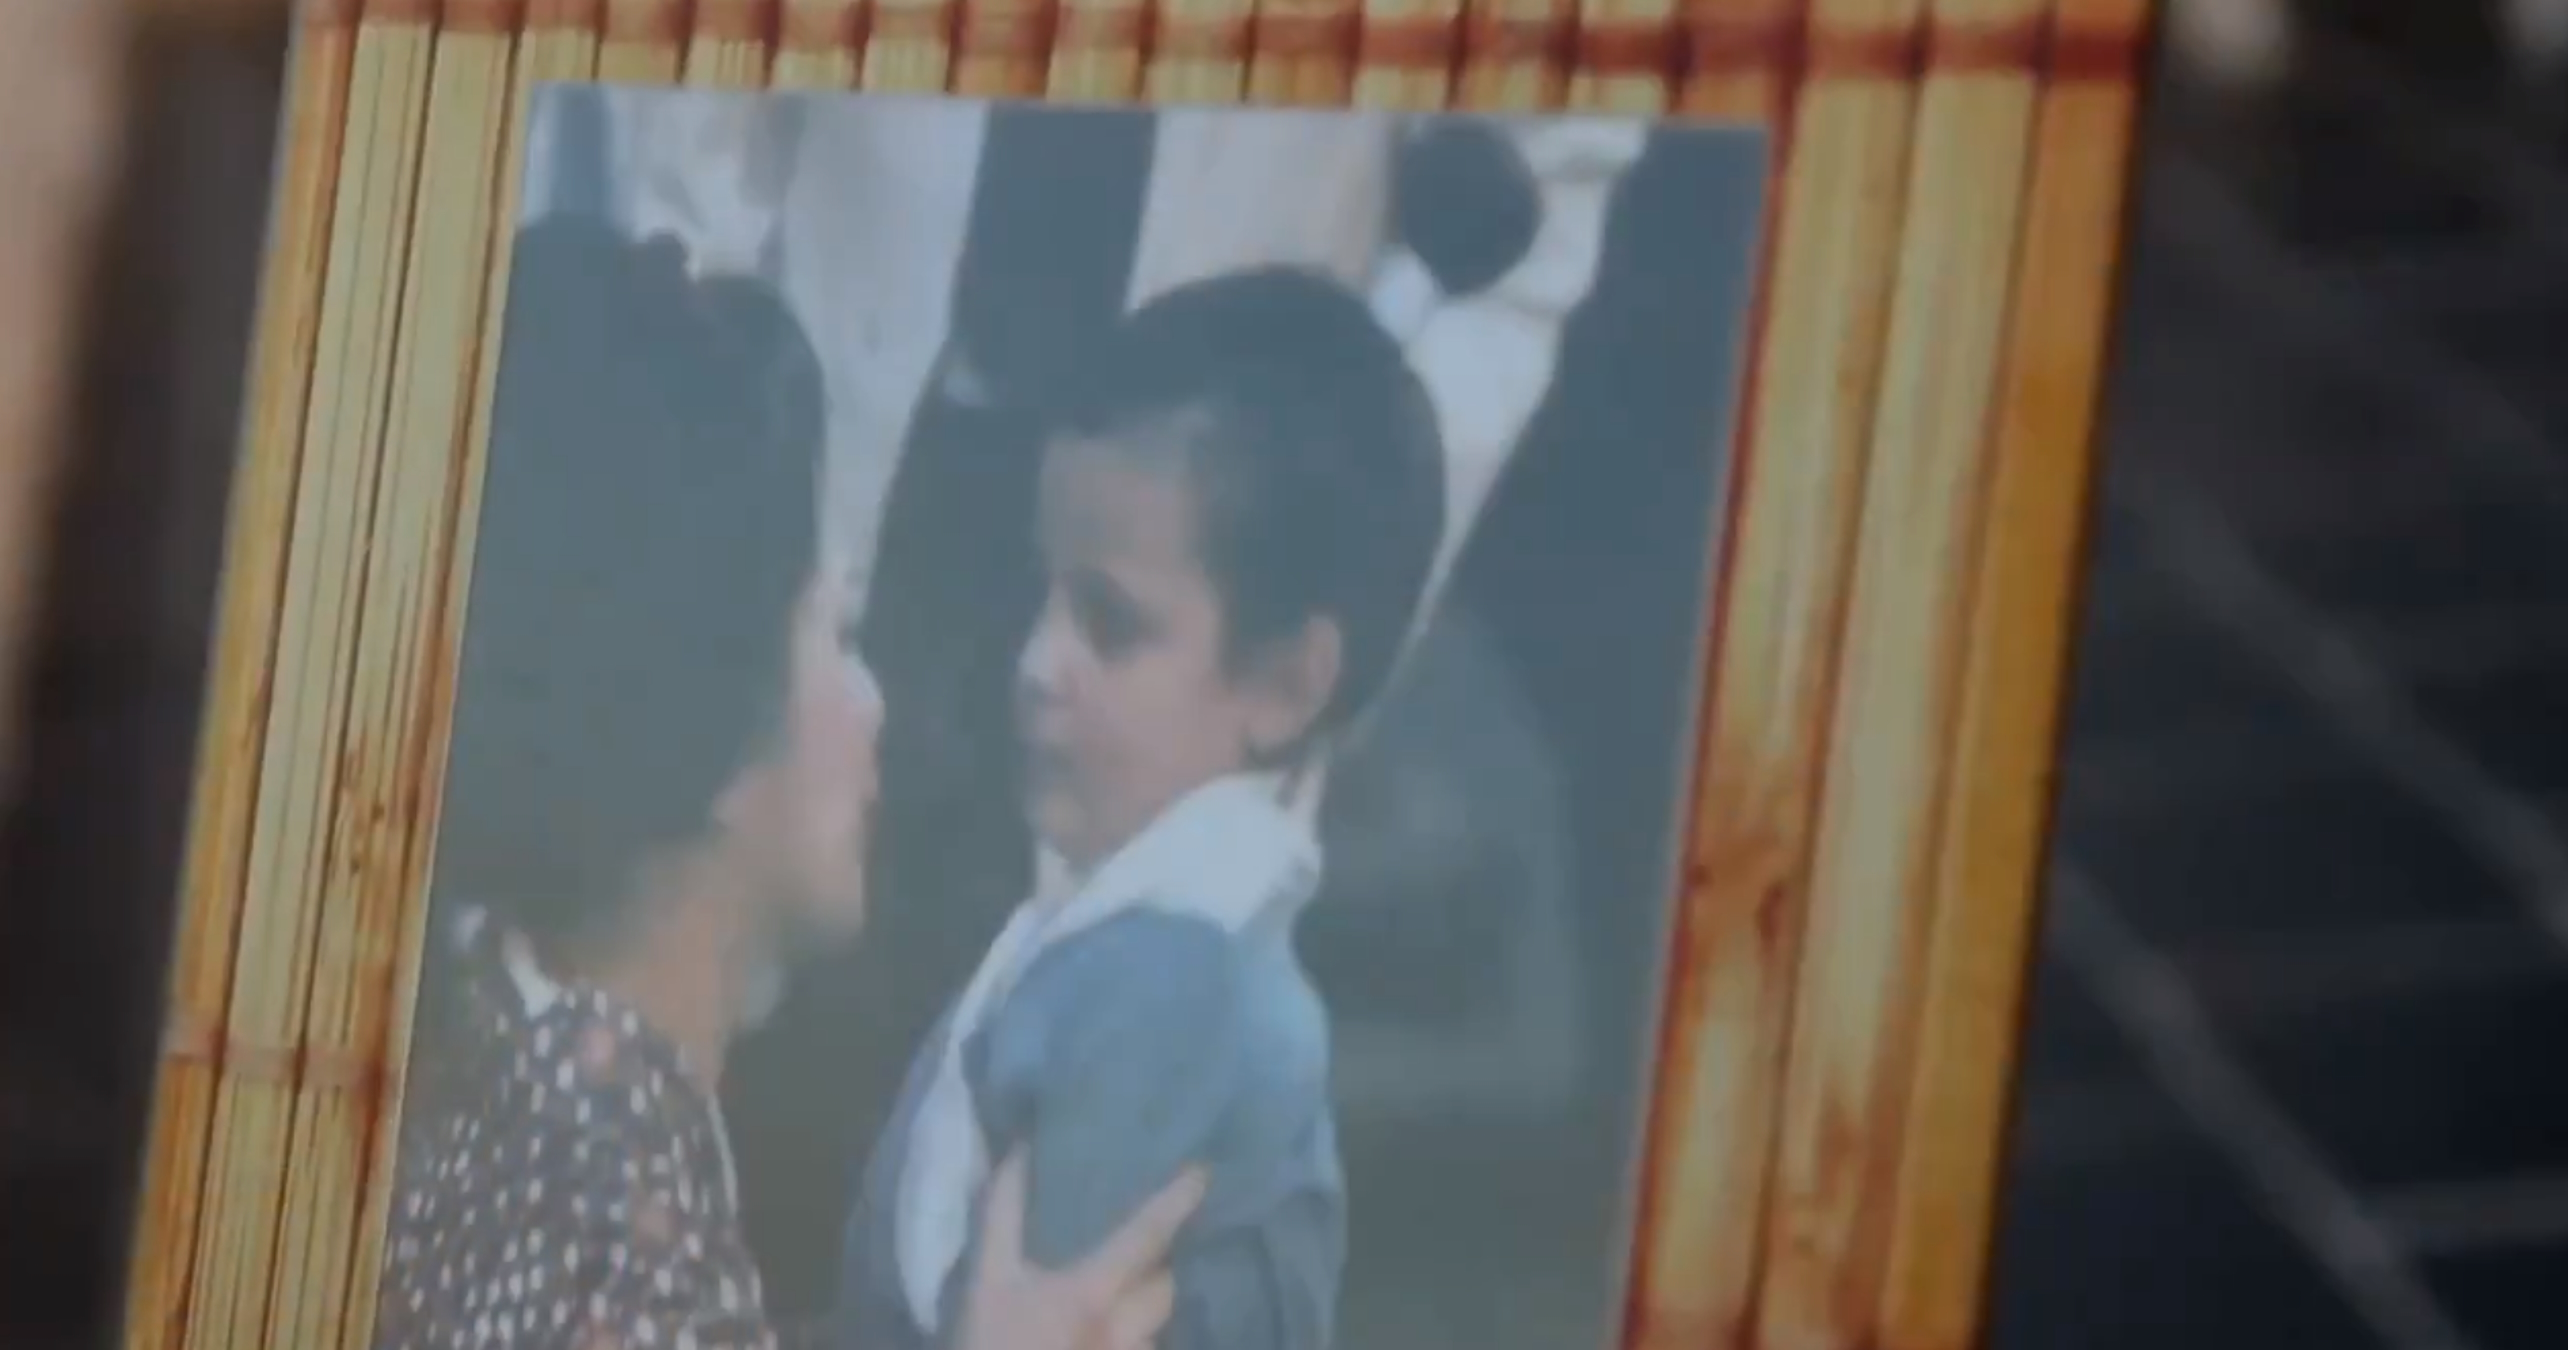 Sonia Monroy y su inverosímil videoclip dedicado a su madre, hace llorar